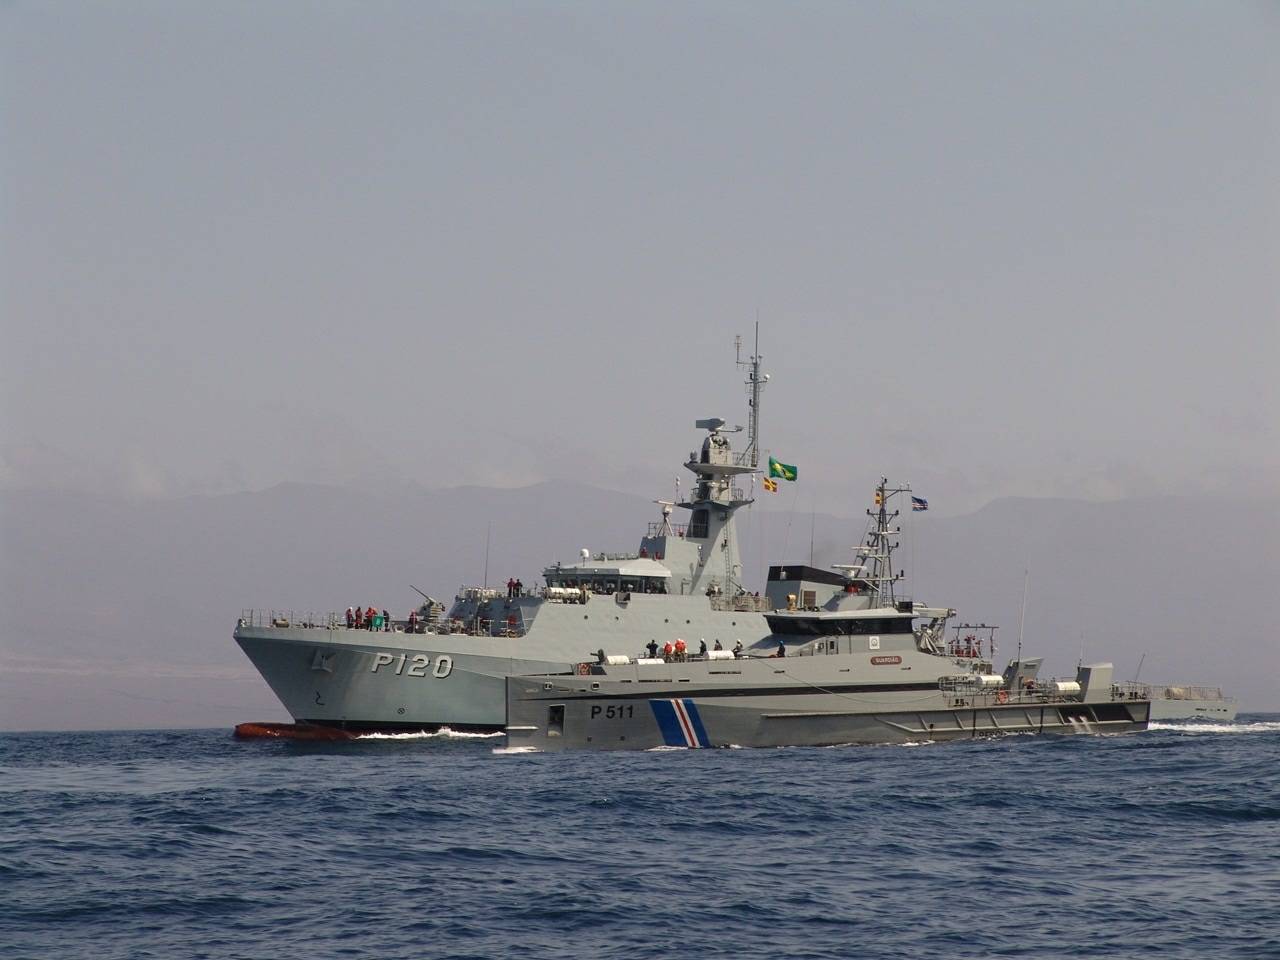 Realizando Passex com o Navio Patrulha Guardião da Guarda Costeira de Cabo Verde. (foto: NPaOc Amazonas)